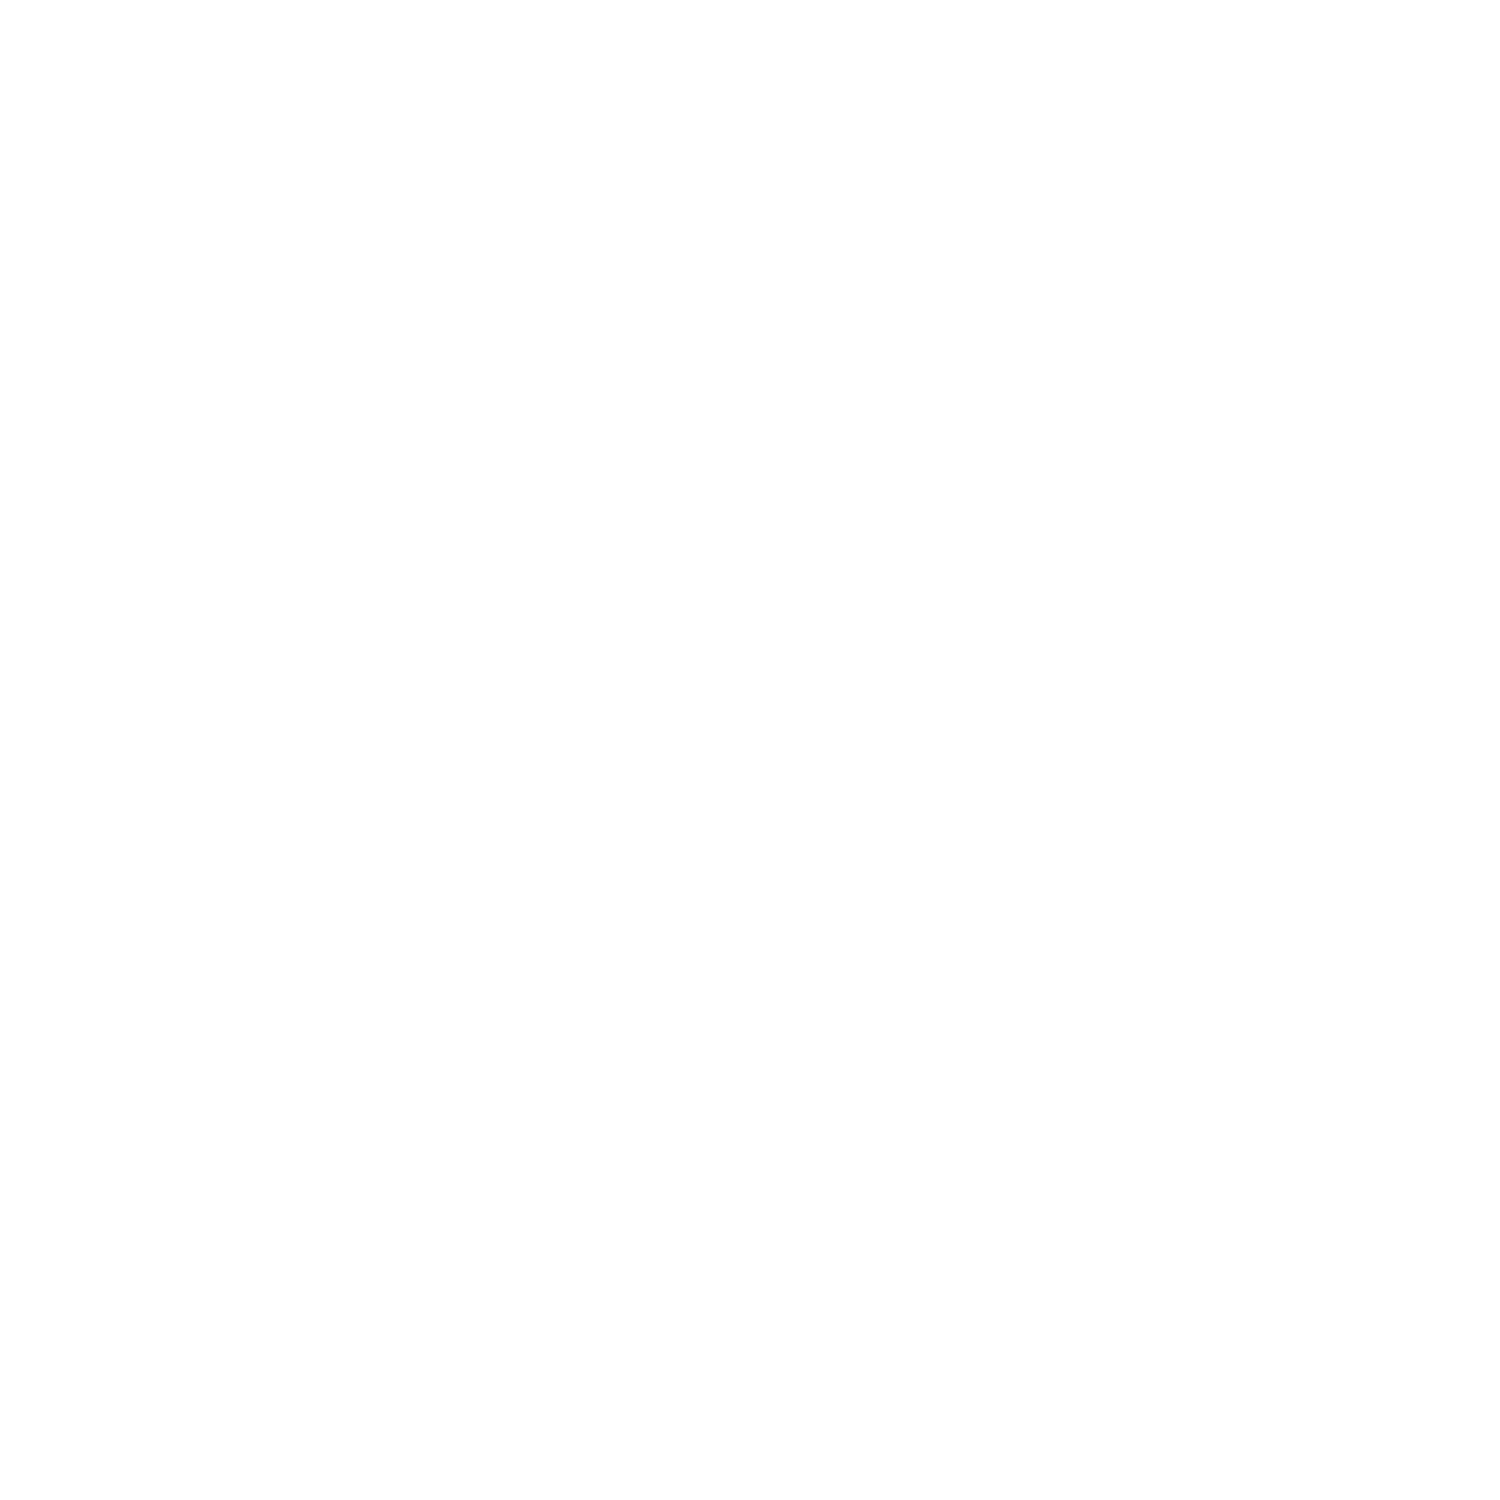 Shoot for Stars